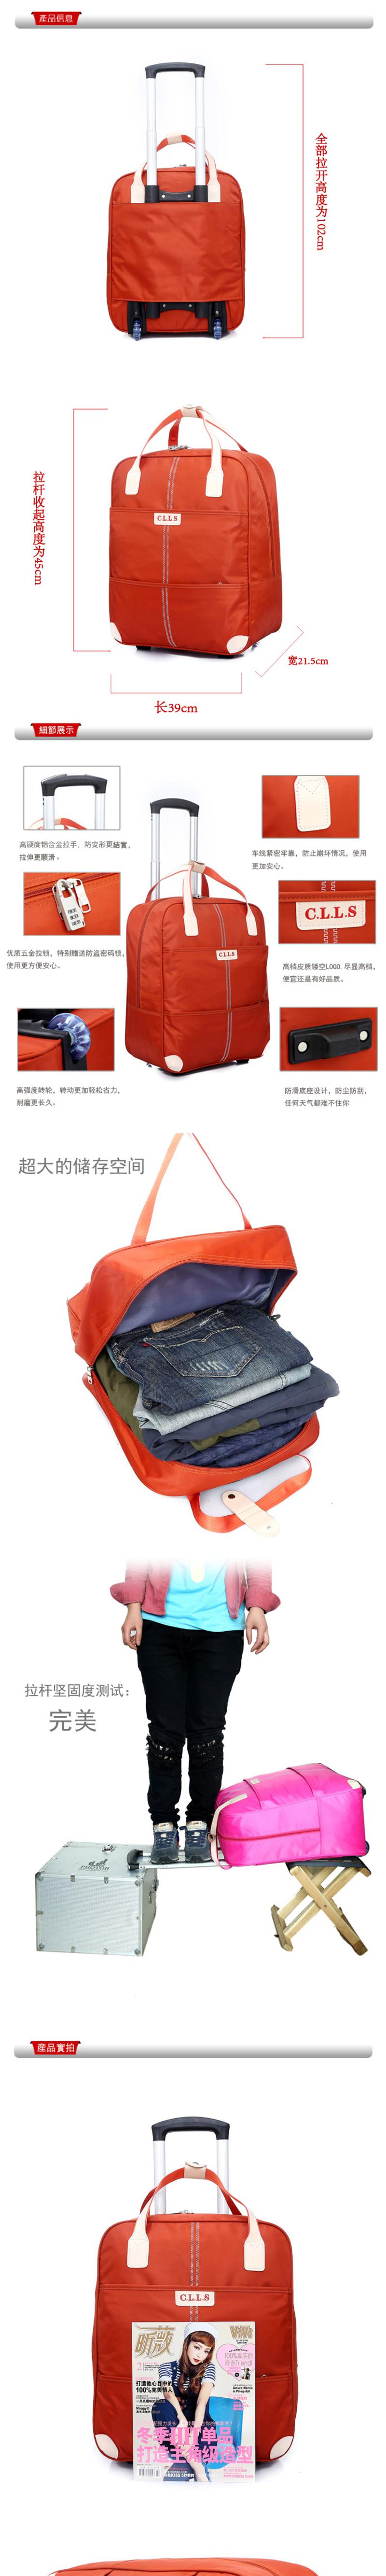 旅行包 拉杆包女行李包拉杆旅行袋短途旅游箱子登机20寸韩版mc190